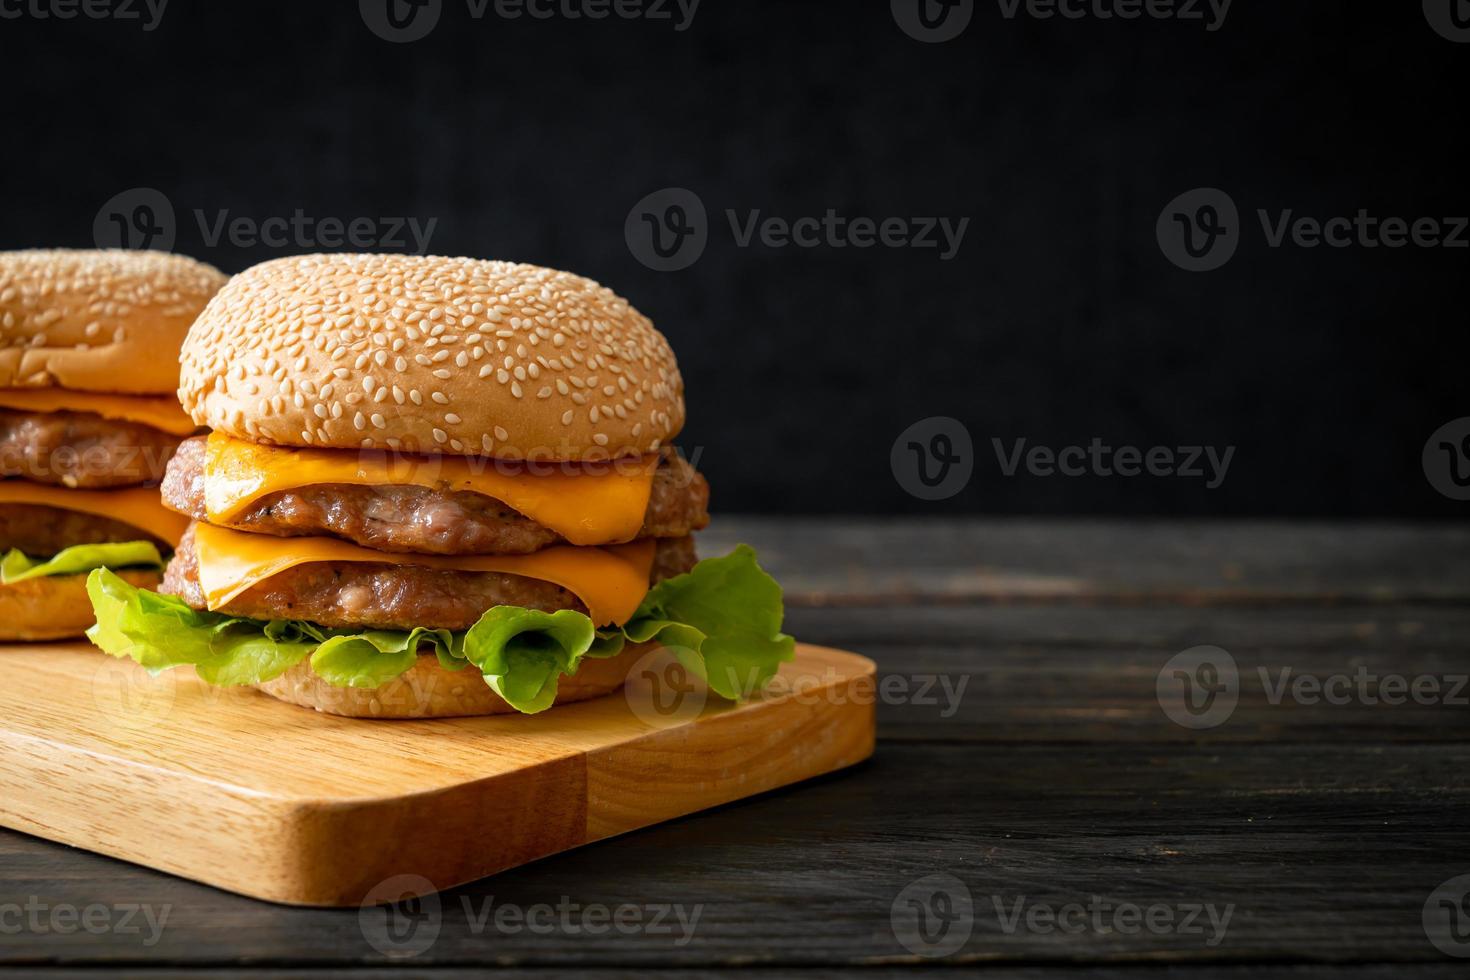 hambúrguer de porco ou hambúrguer de porco com queijo na placa de madeira foto